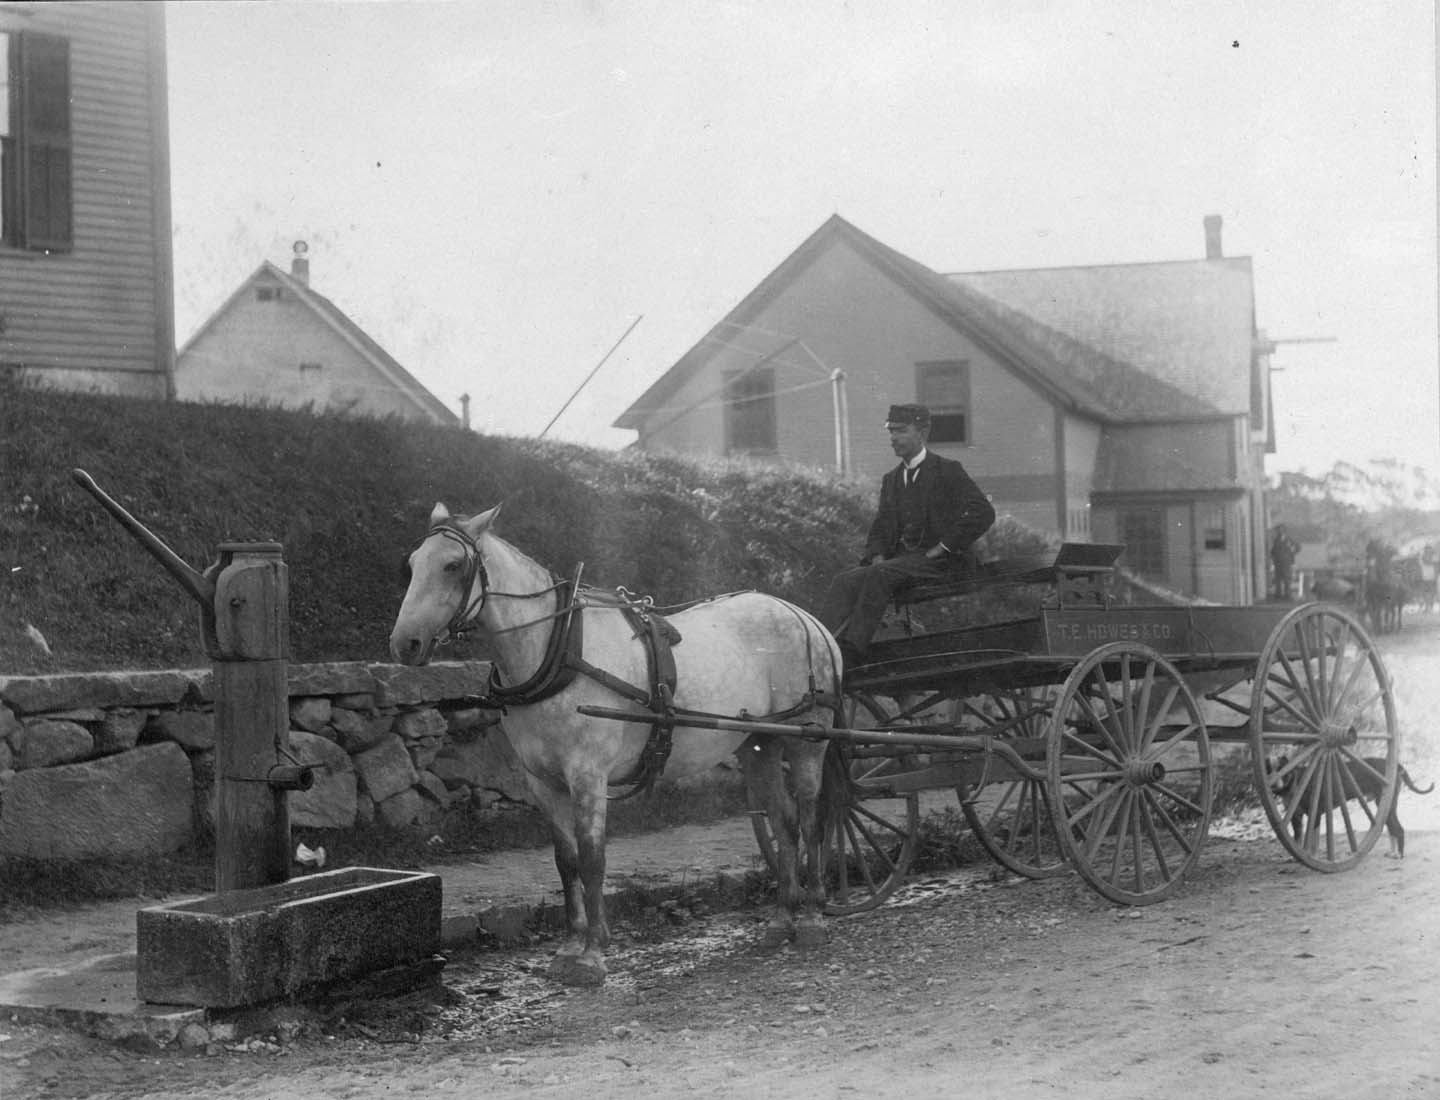 Howe's wagon